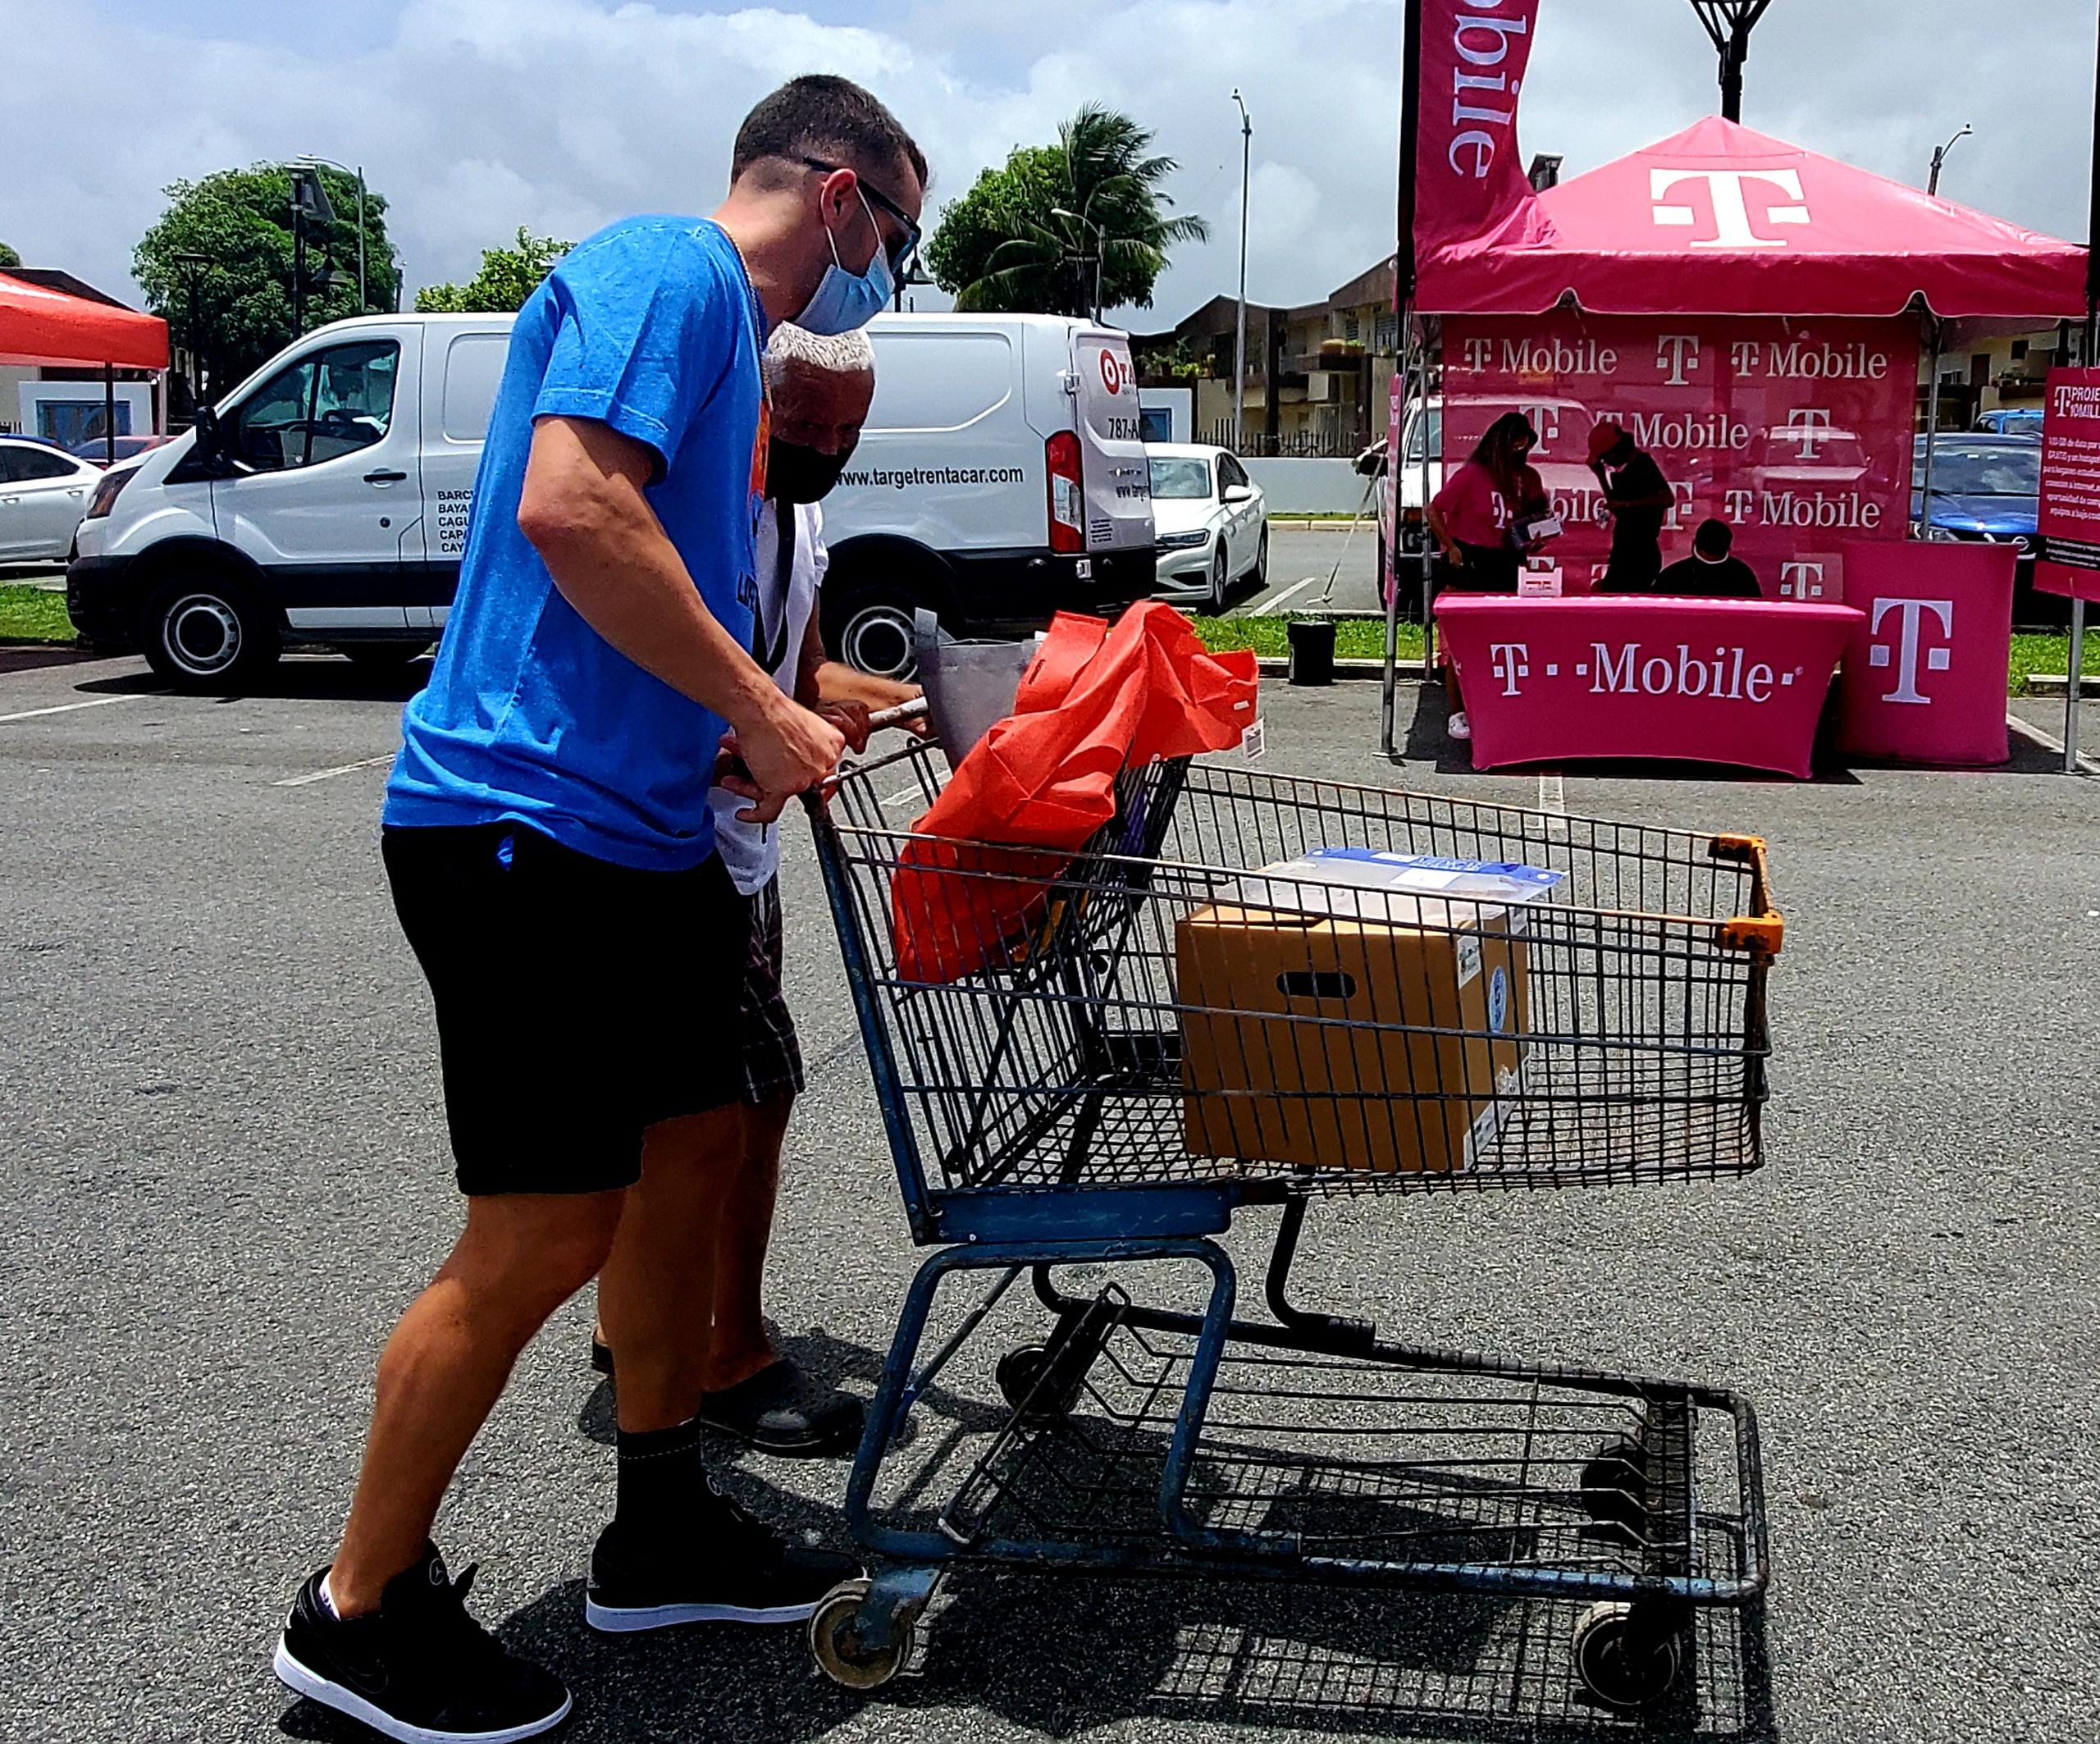 Varias personas llegaron empujando un carro de compras o una silla de ruedas para colocar los artículos.